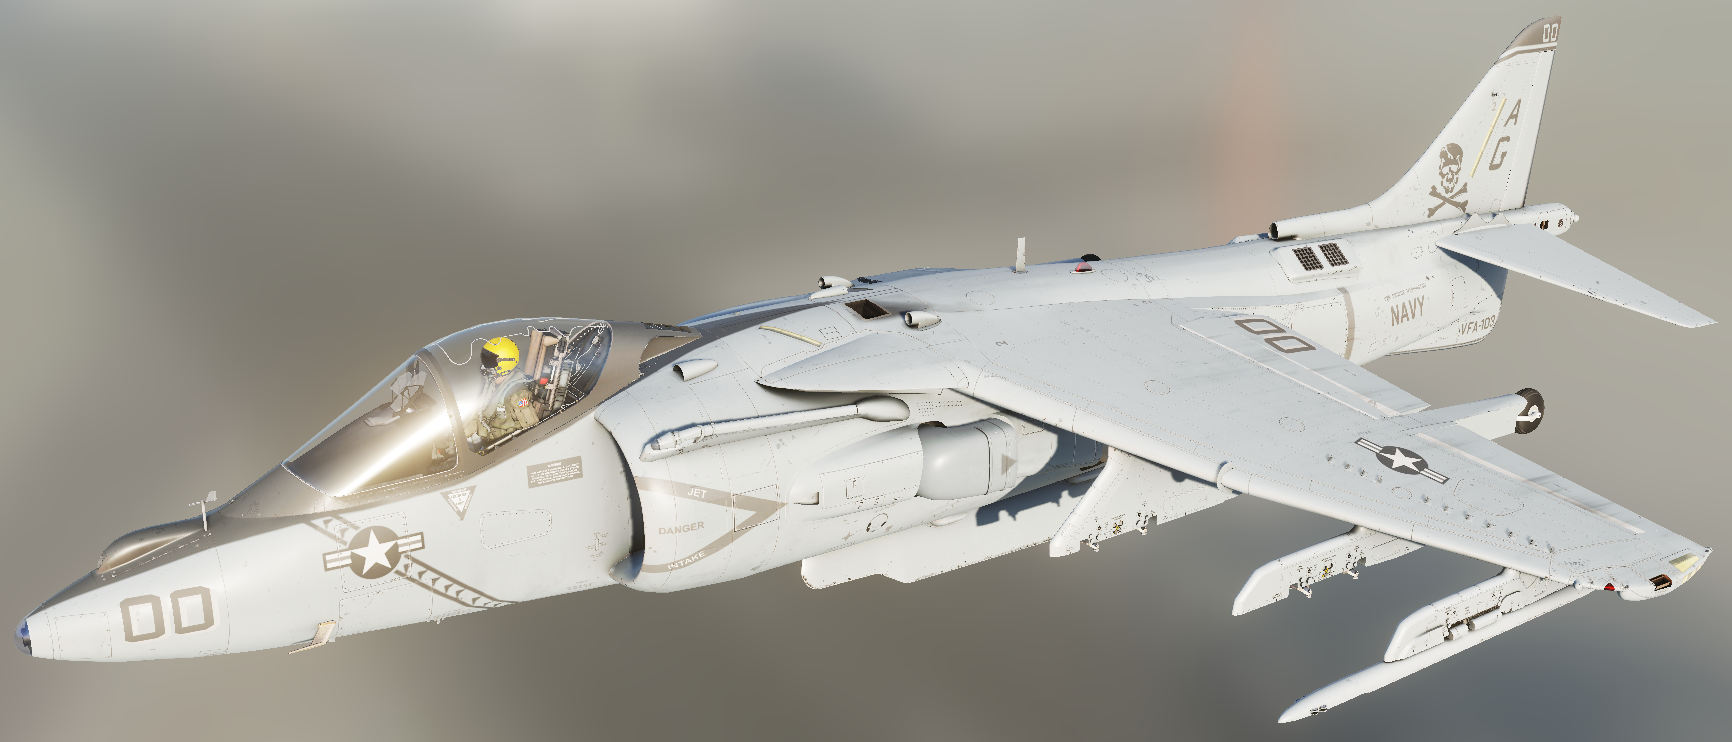 Fictional skin for AV-8B N/A: "VFA-103 - 3 (Low-Vis)"